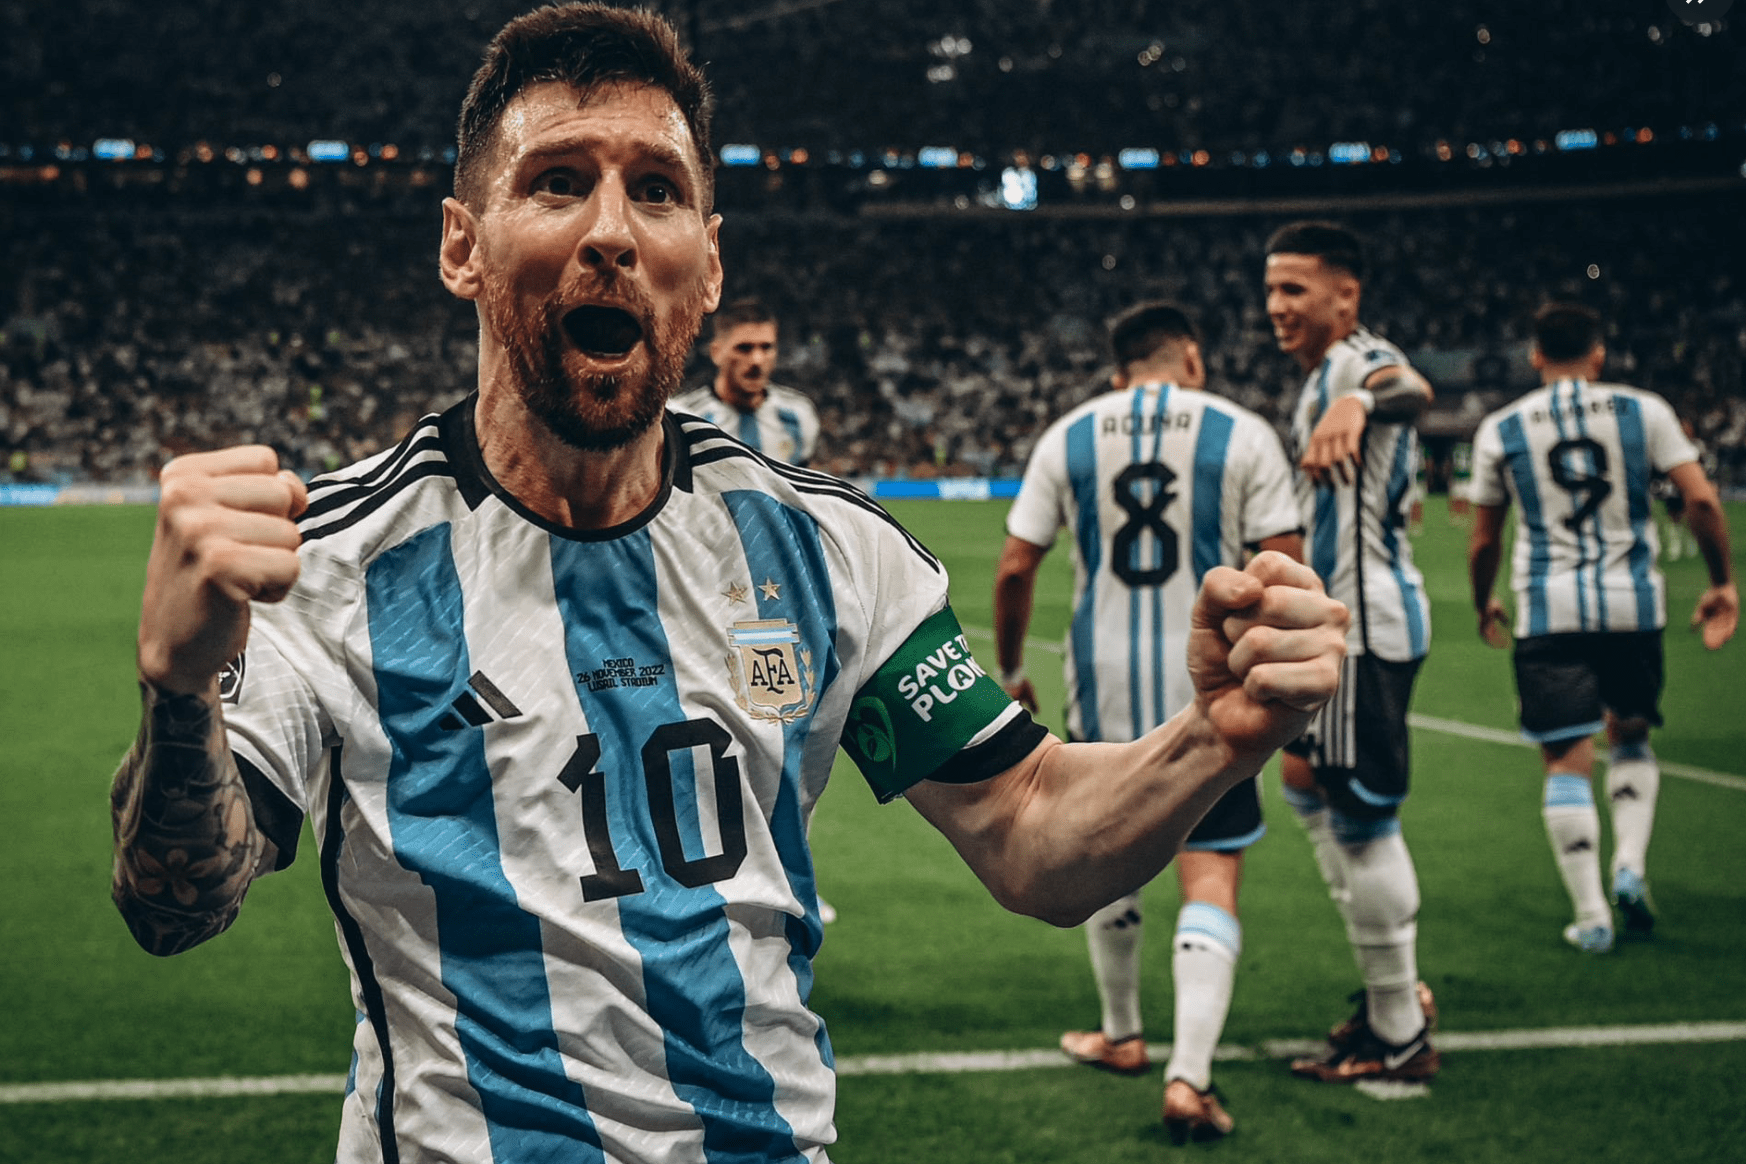 Dna da campioni: Messi e Mbappé protagonisti al Mondiale, a caccia di record e vittorie